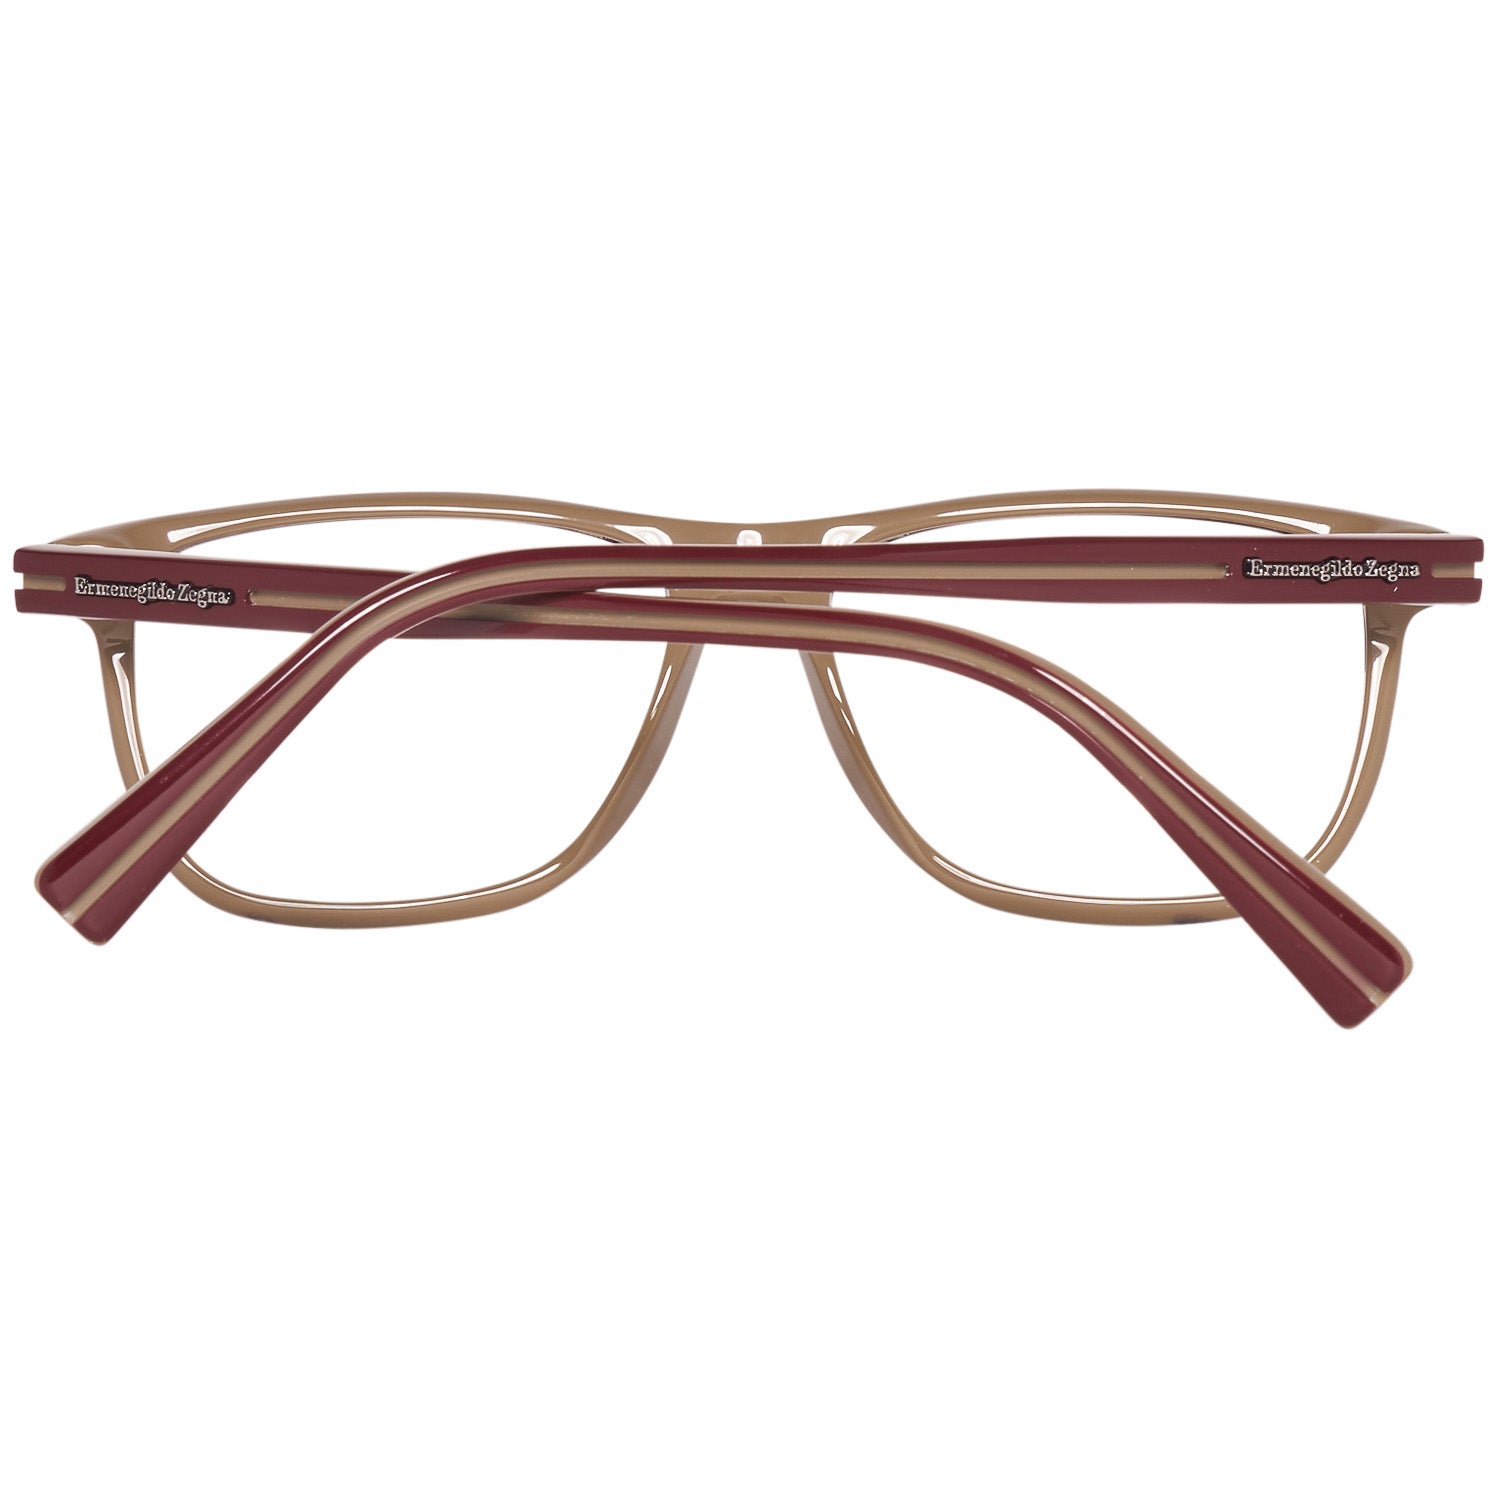 Ermenegildo Zegna Frames Ermenegildo Zegna Glasses Optical Frame EZ5044 071 55 Eyeglasses Eyewear UK USA Australia 